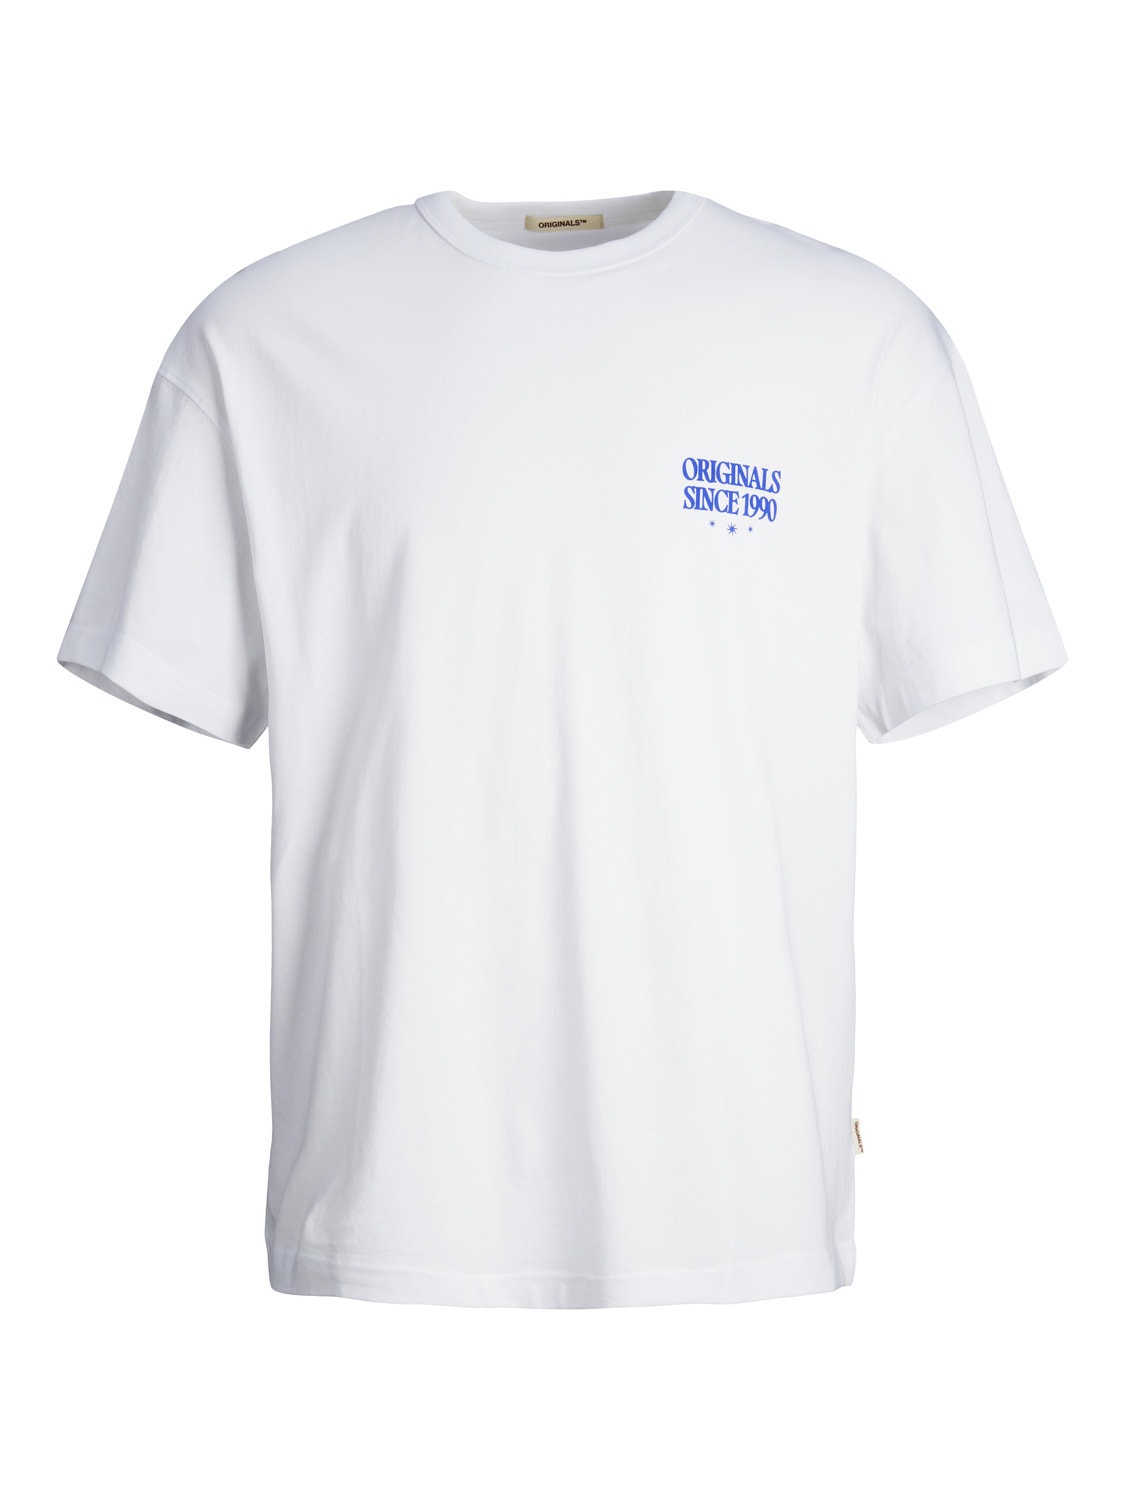 Jack & Jones Wide Fit Round Neck T-Shirt -Bright White - 12256258